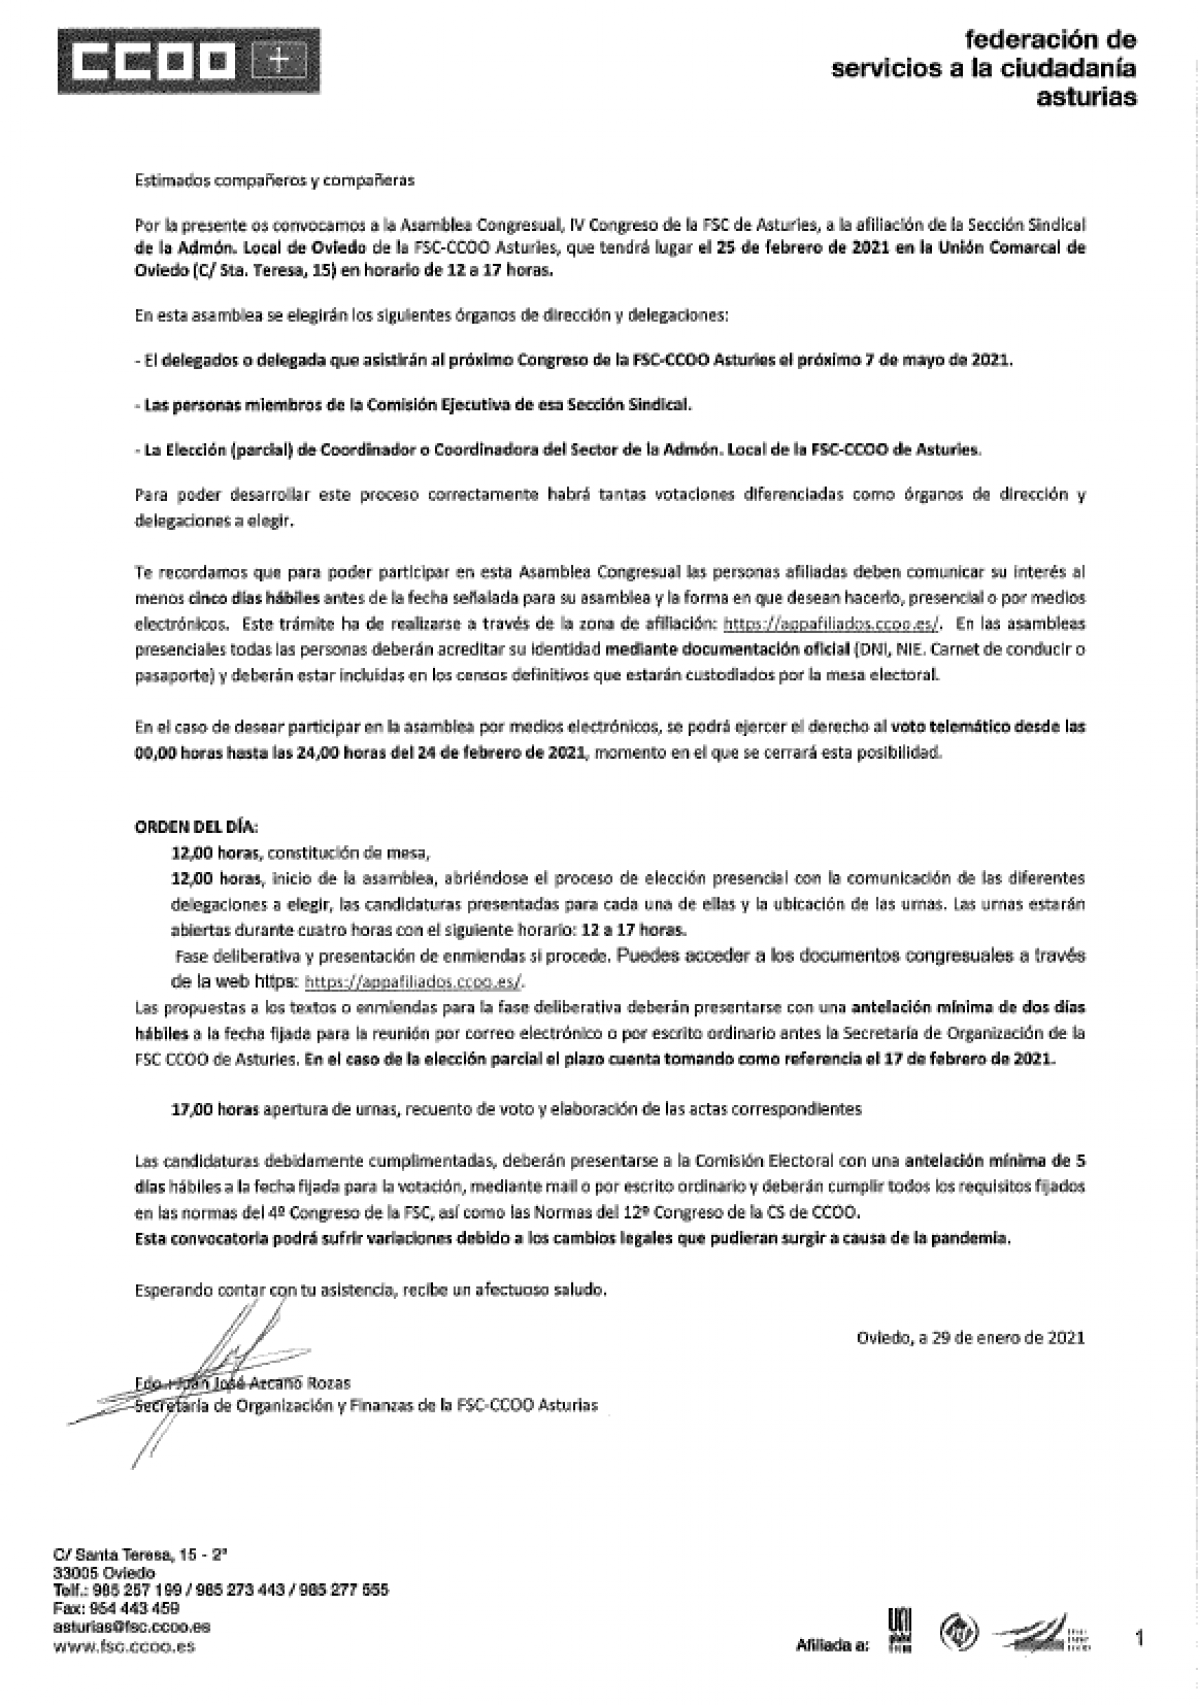 Convocatoria asamblea SS Admn Local Oviedo 25-02-2021. FSC Asturias